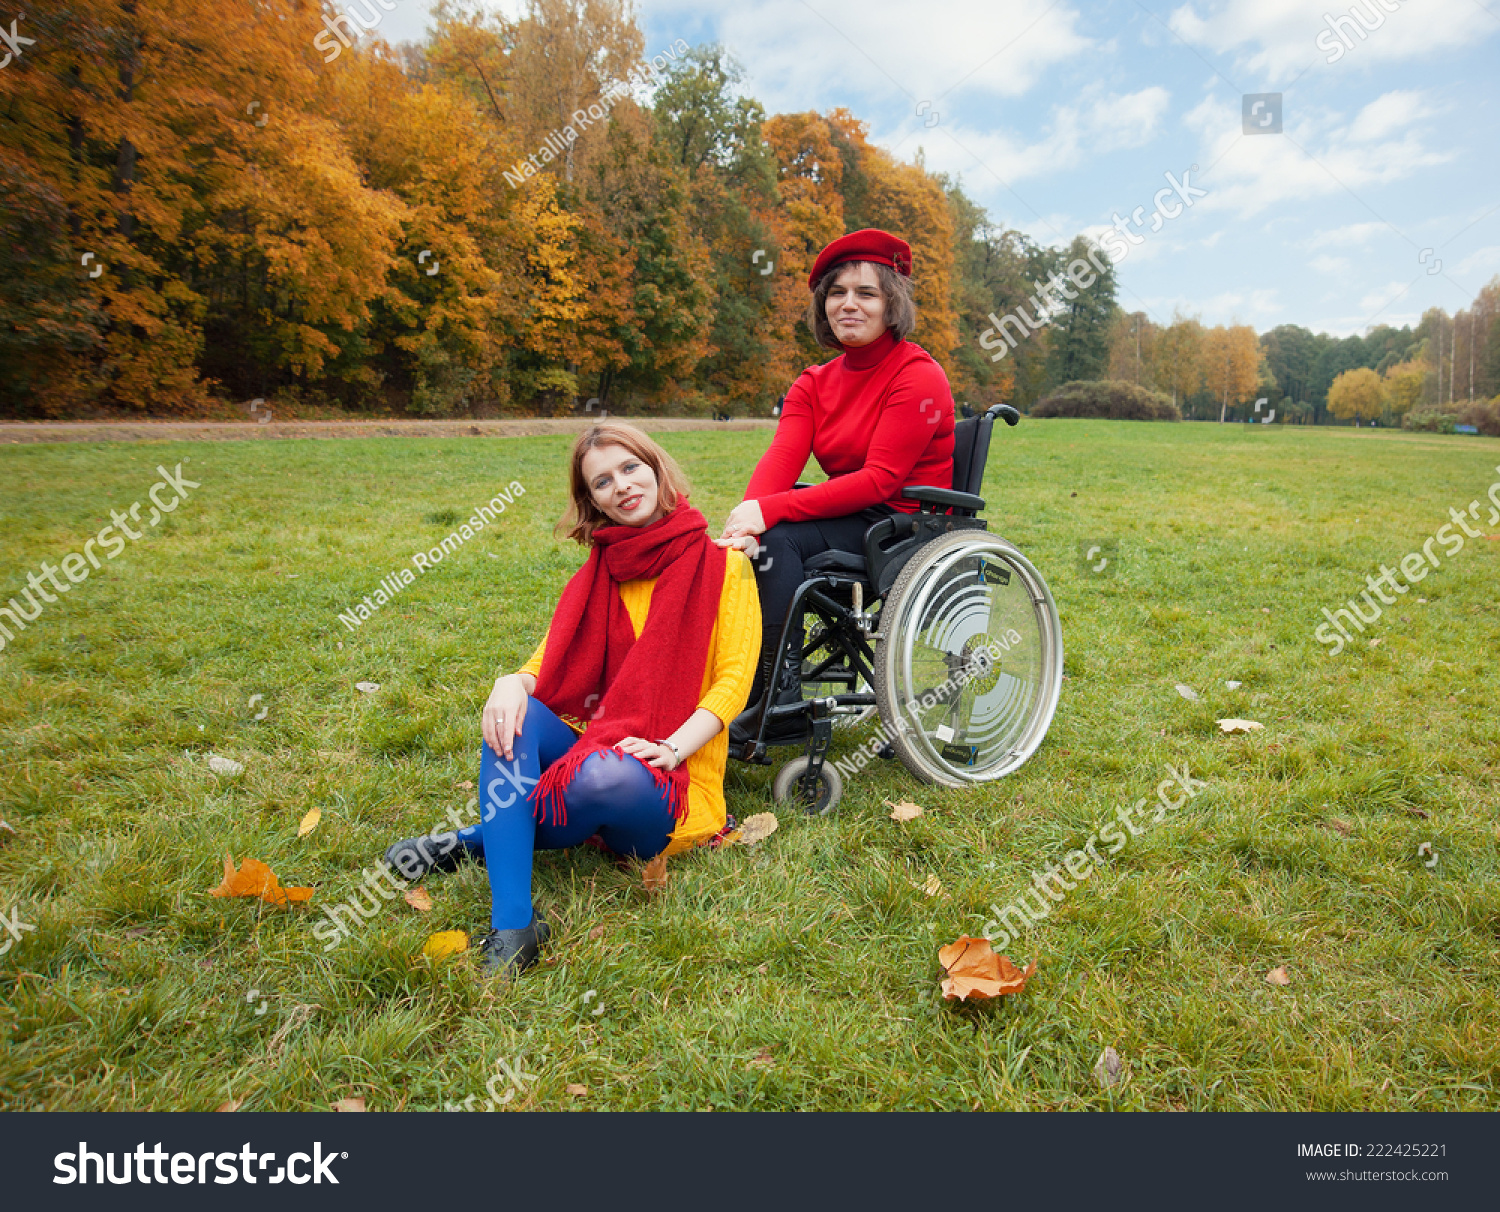 Фотосессия в инвалидной коляске осенью в парке